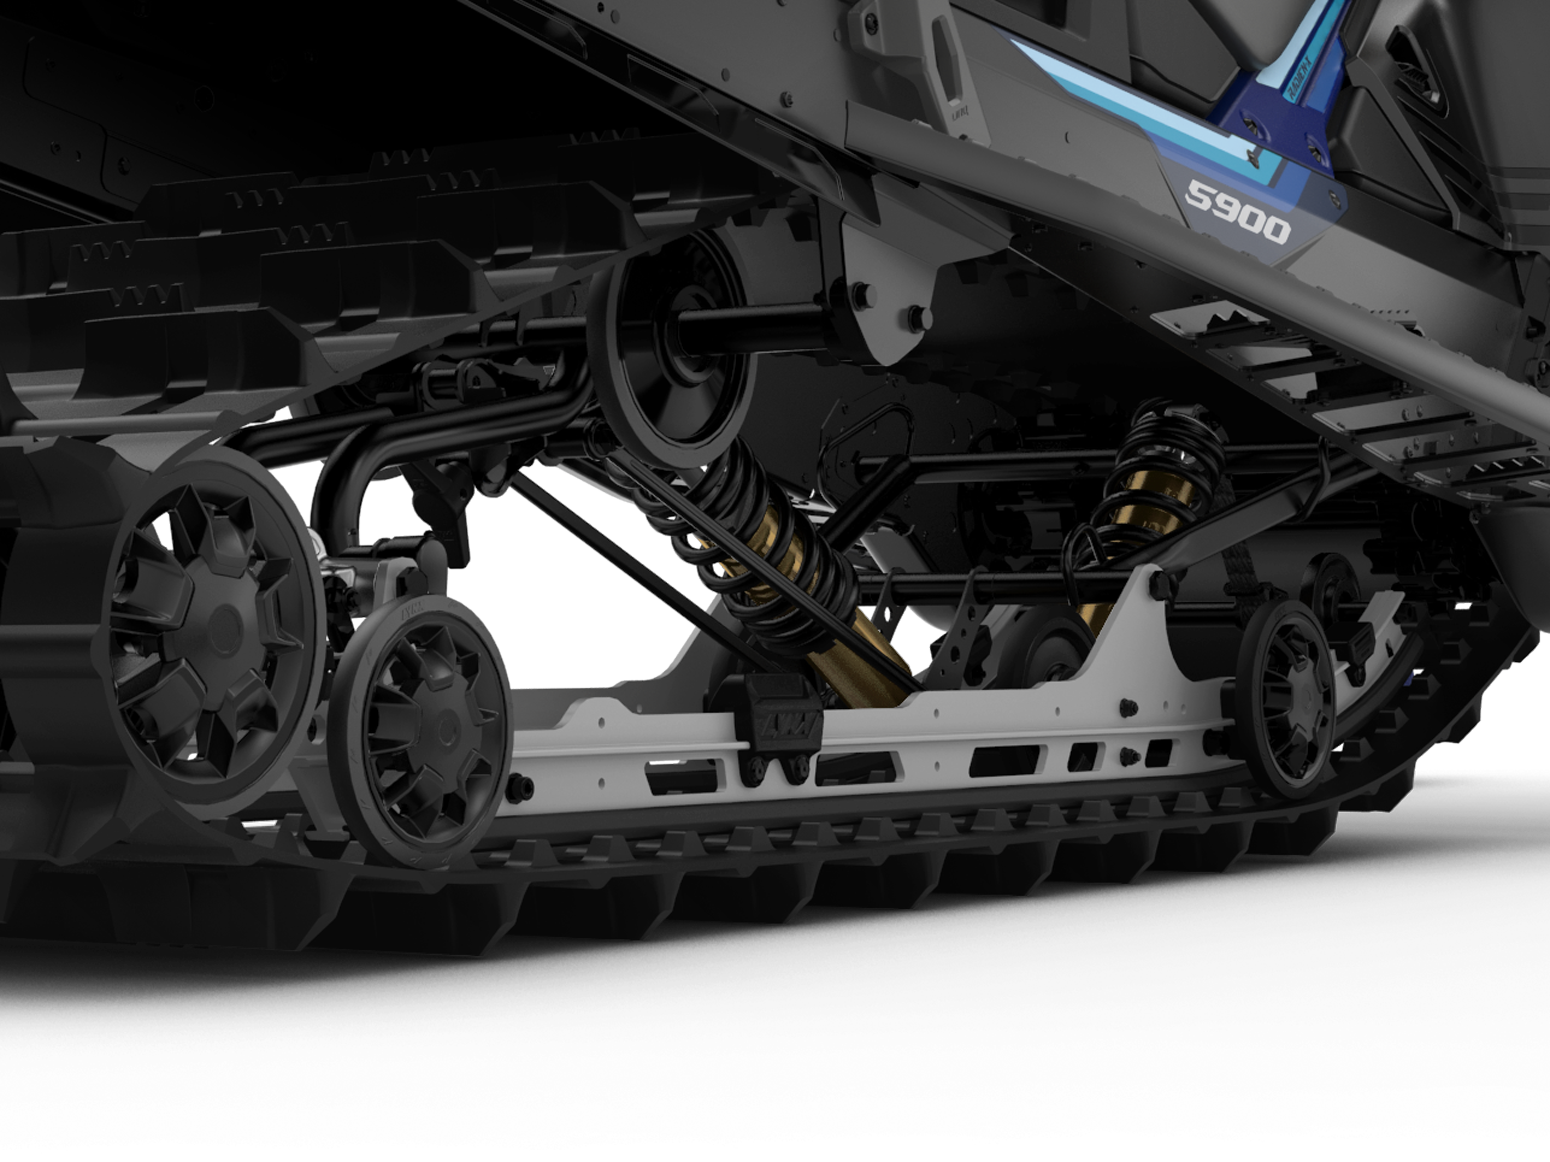 Lynx Commander EasyRide rear suspension